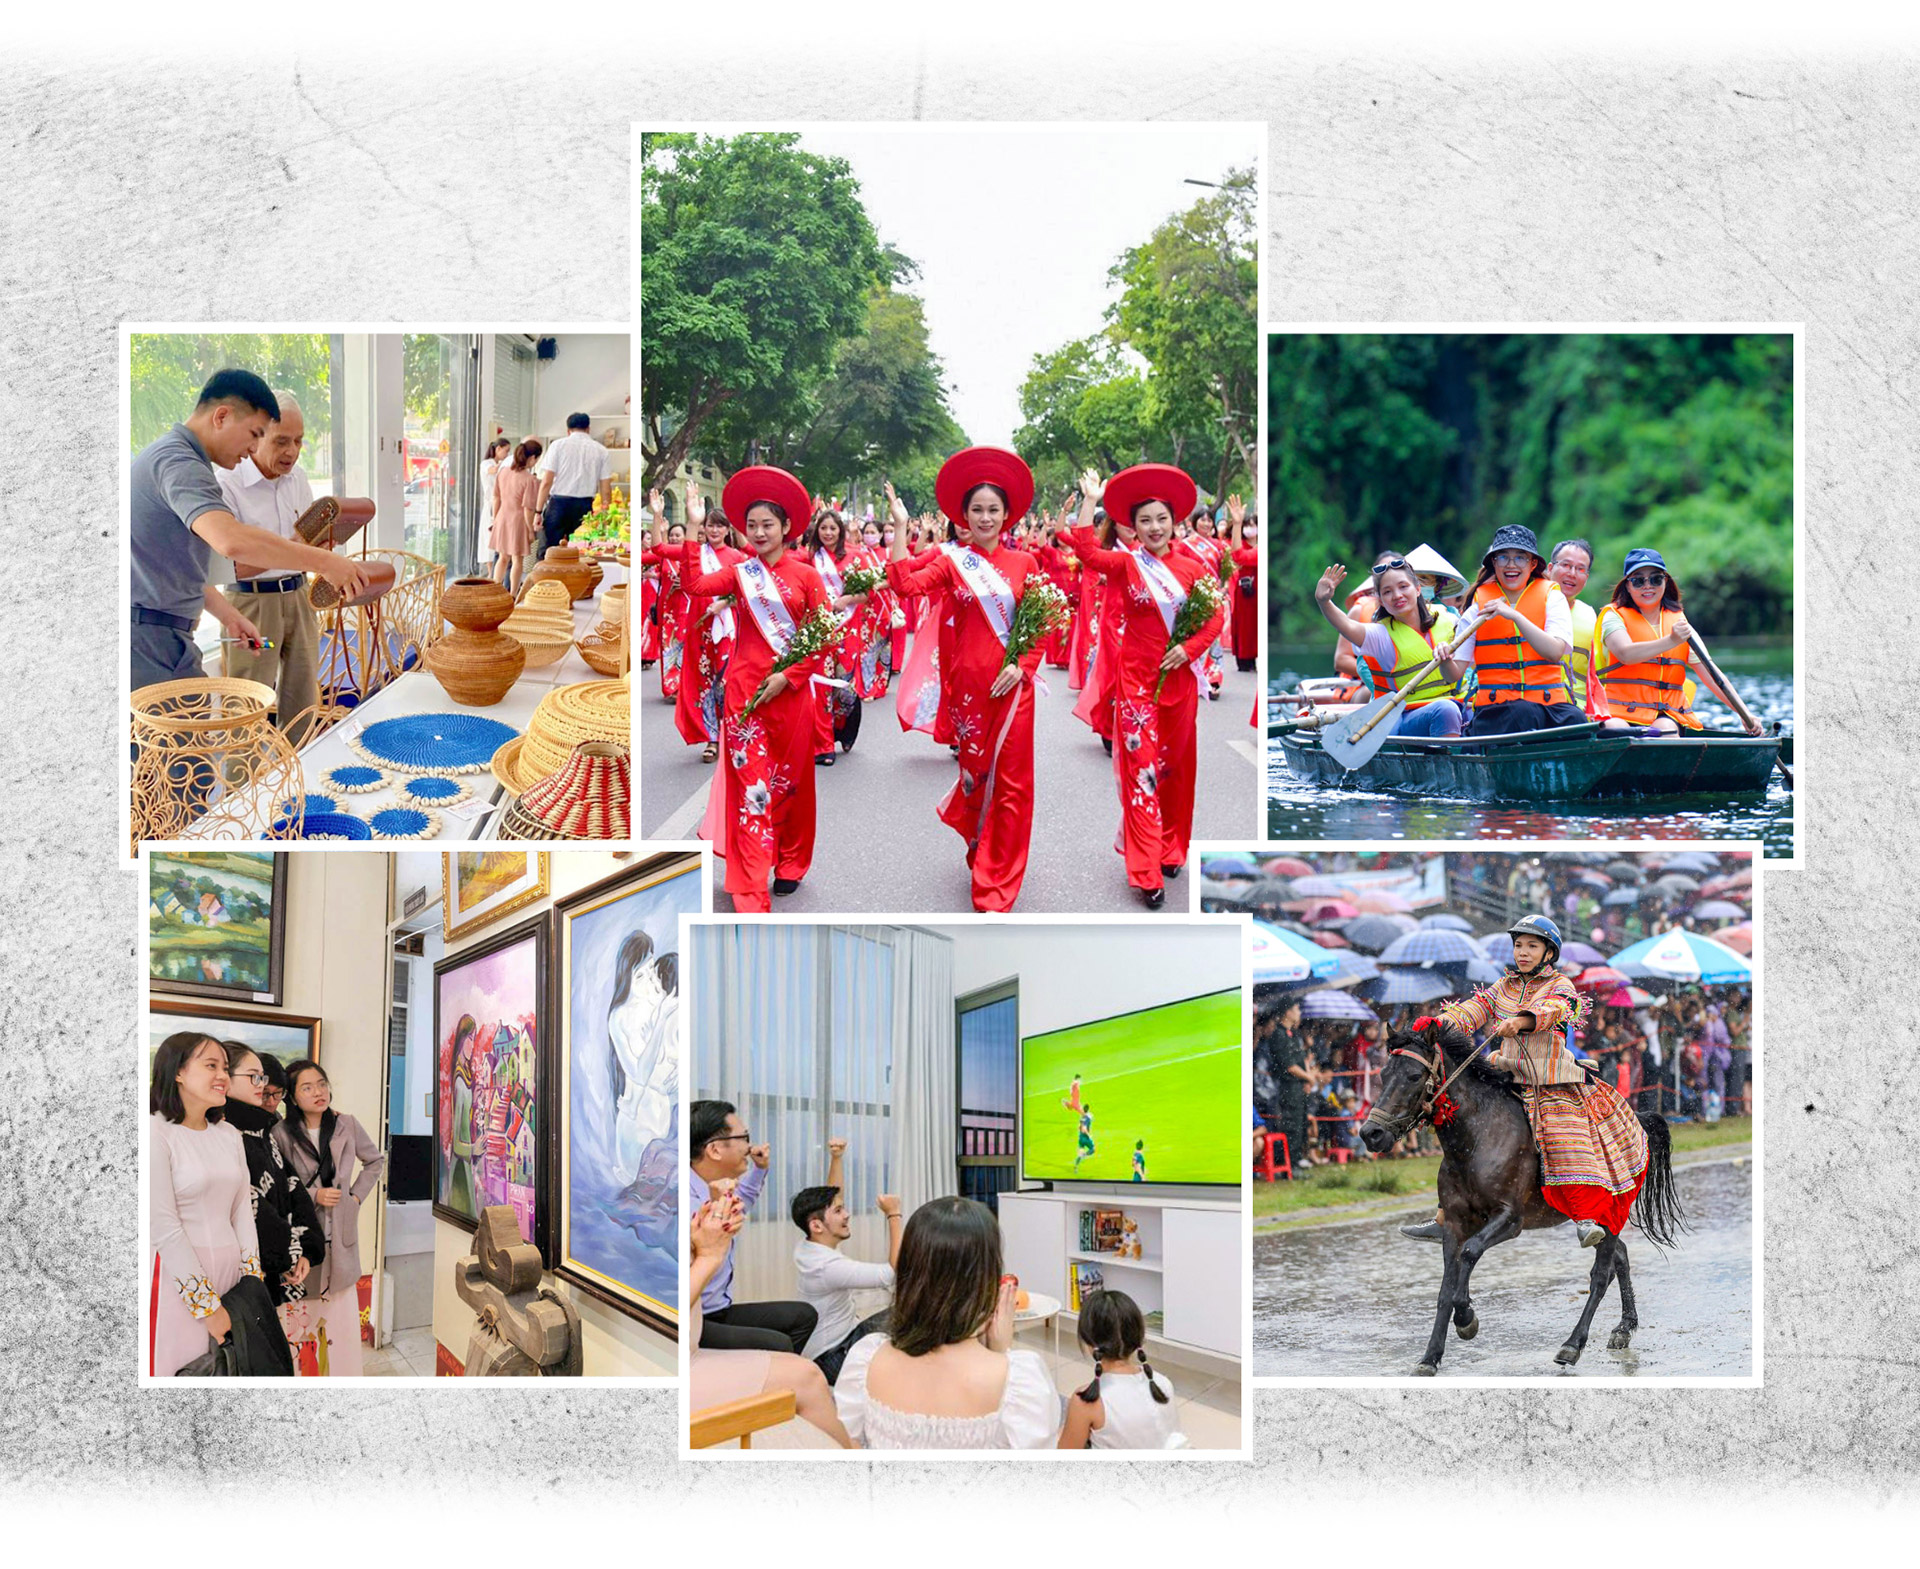 Phát triển công nghiệp văn hóa - Cơ hội vàng vươn tầm văn hóa Việt Nam (Bài 2)